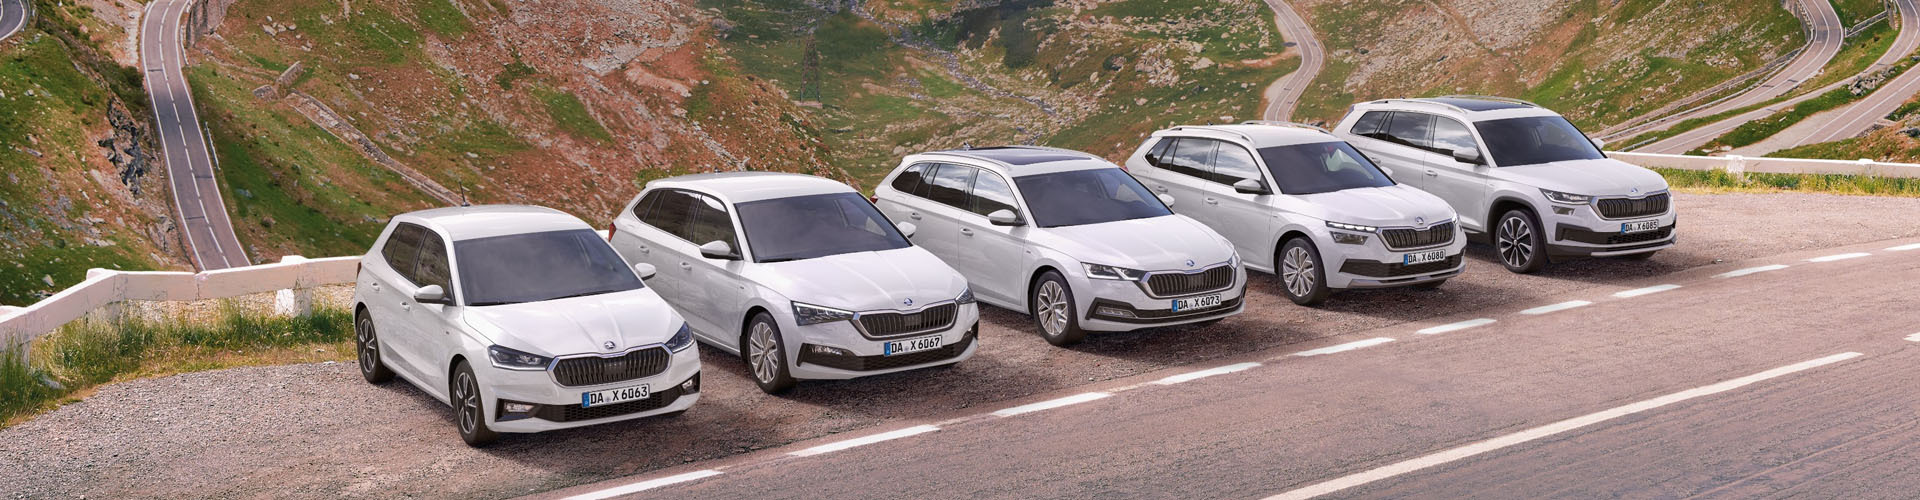 Škoda Konfigurator Österreich » Modelle und Preise